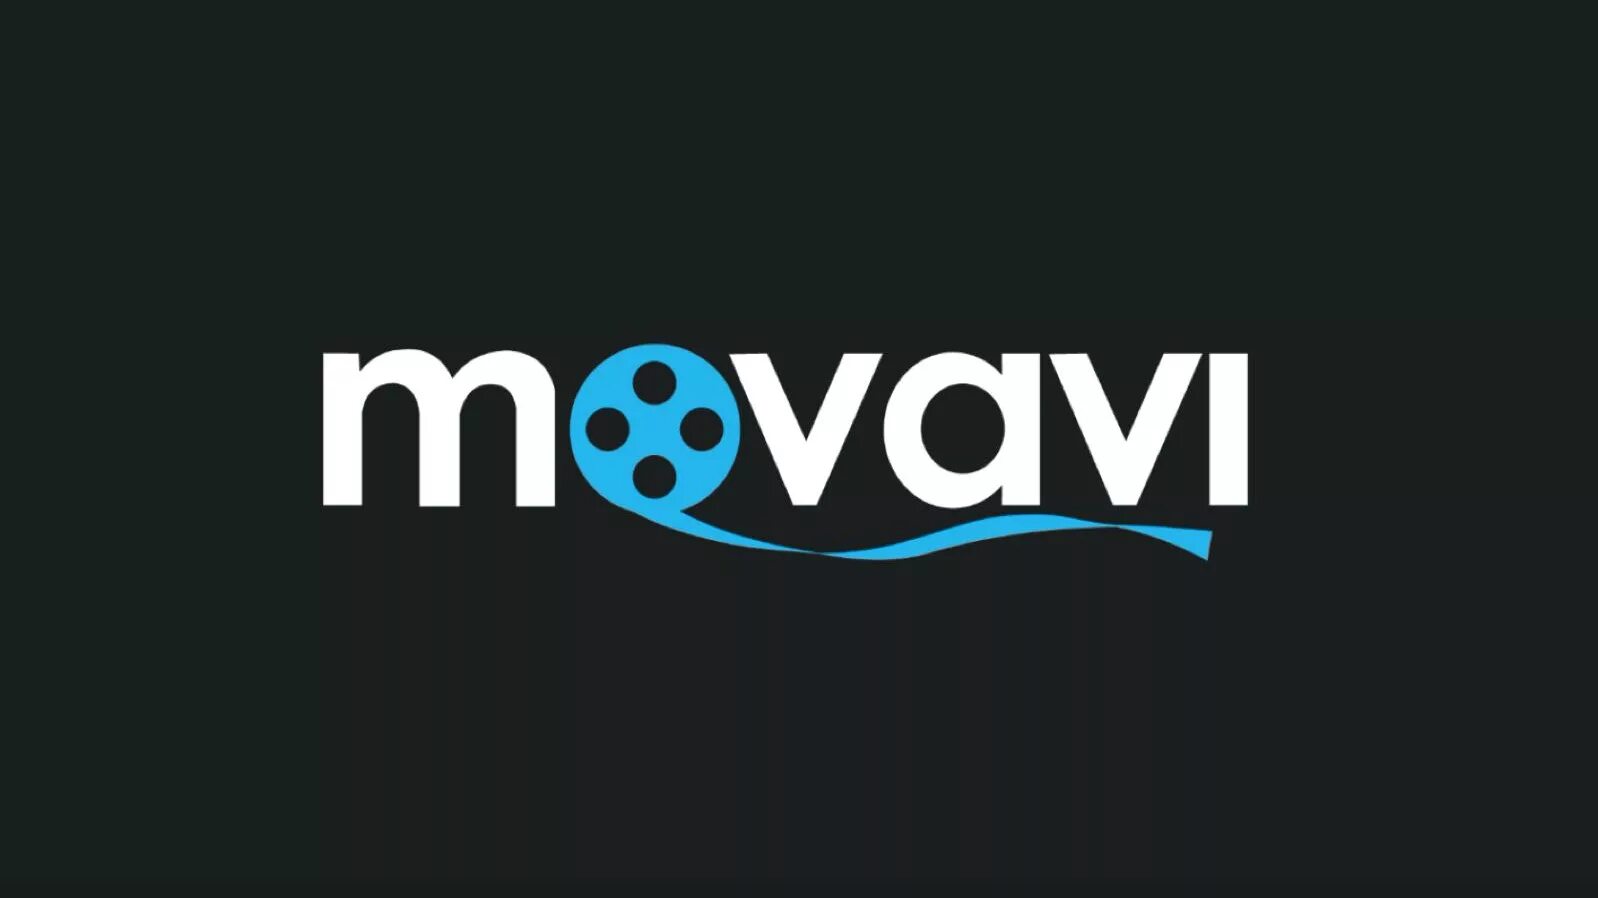 Мовави картинки. Movavi. Movavi логотип. Movavi Video. Movavi Video Editor логотип.